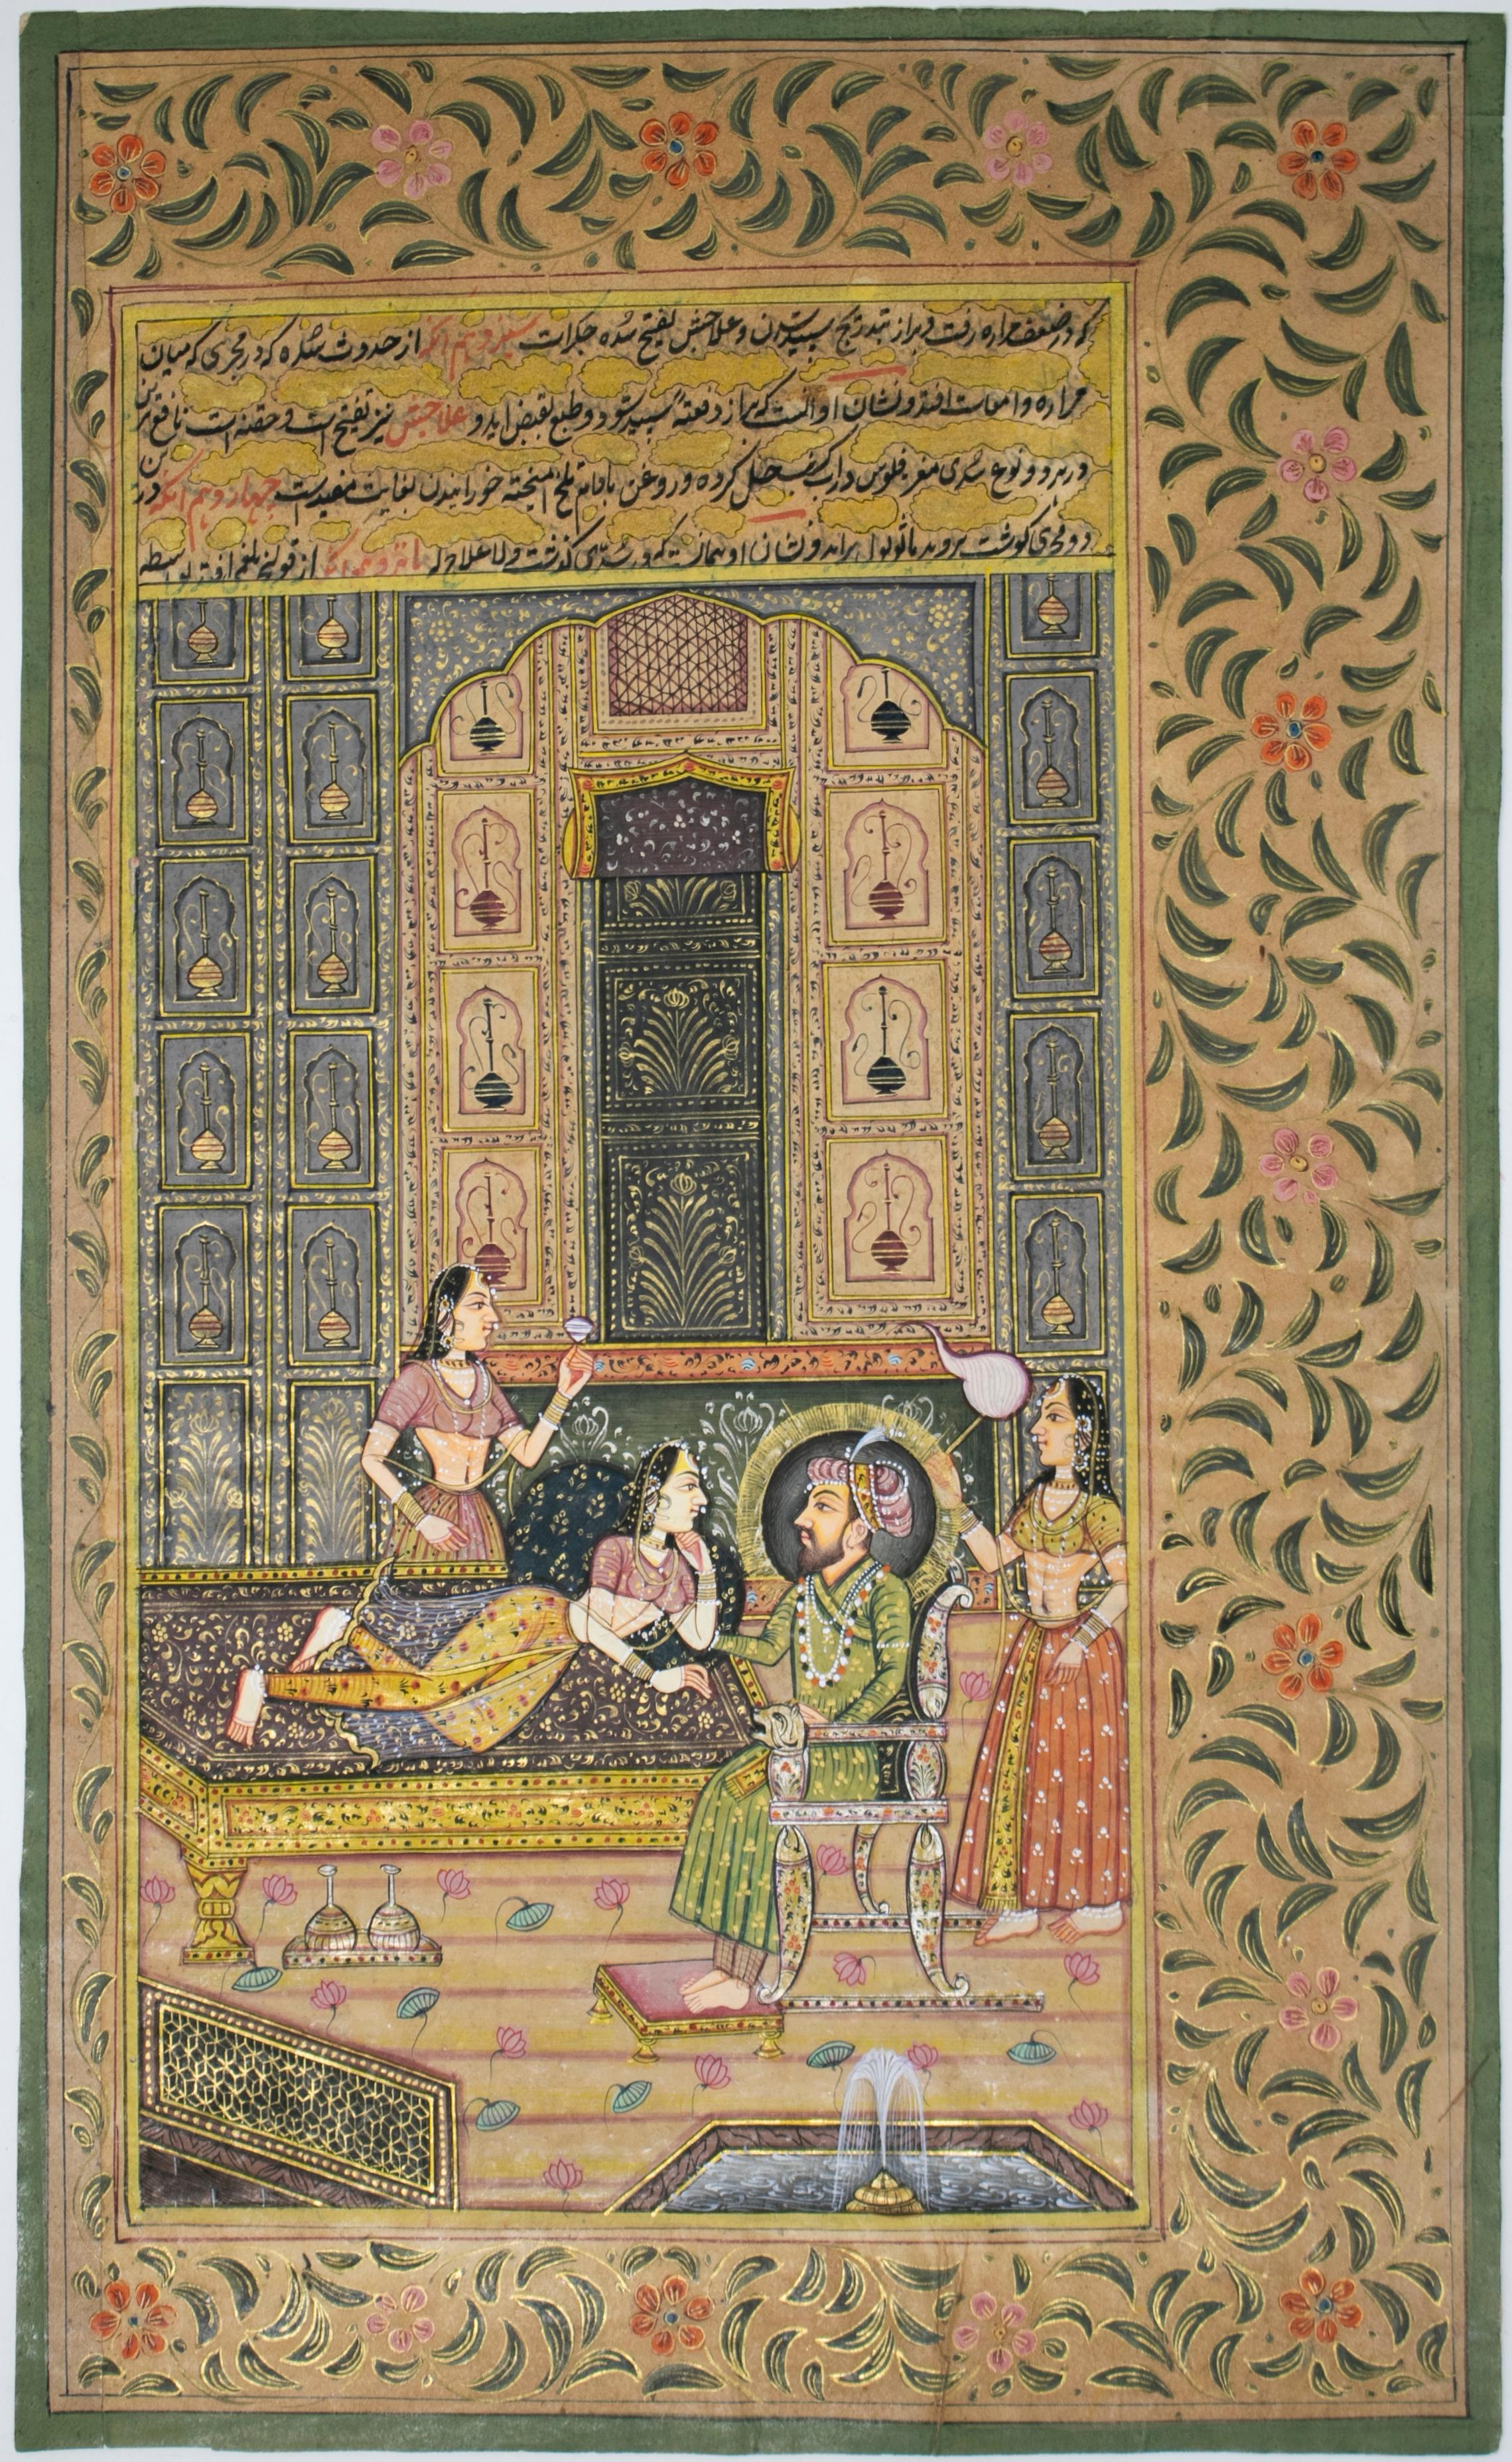 ensemble indien des années 1970 de trois dessins colorés représentant la cour royale des rois. Fait partie d'une grande collection privée.

 